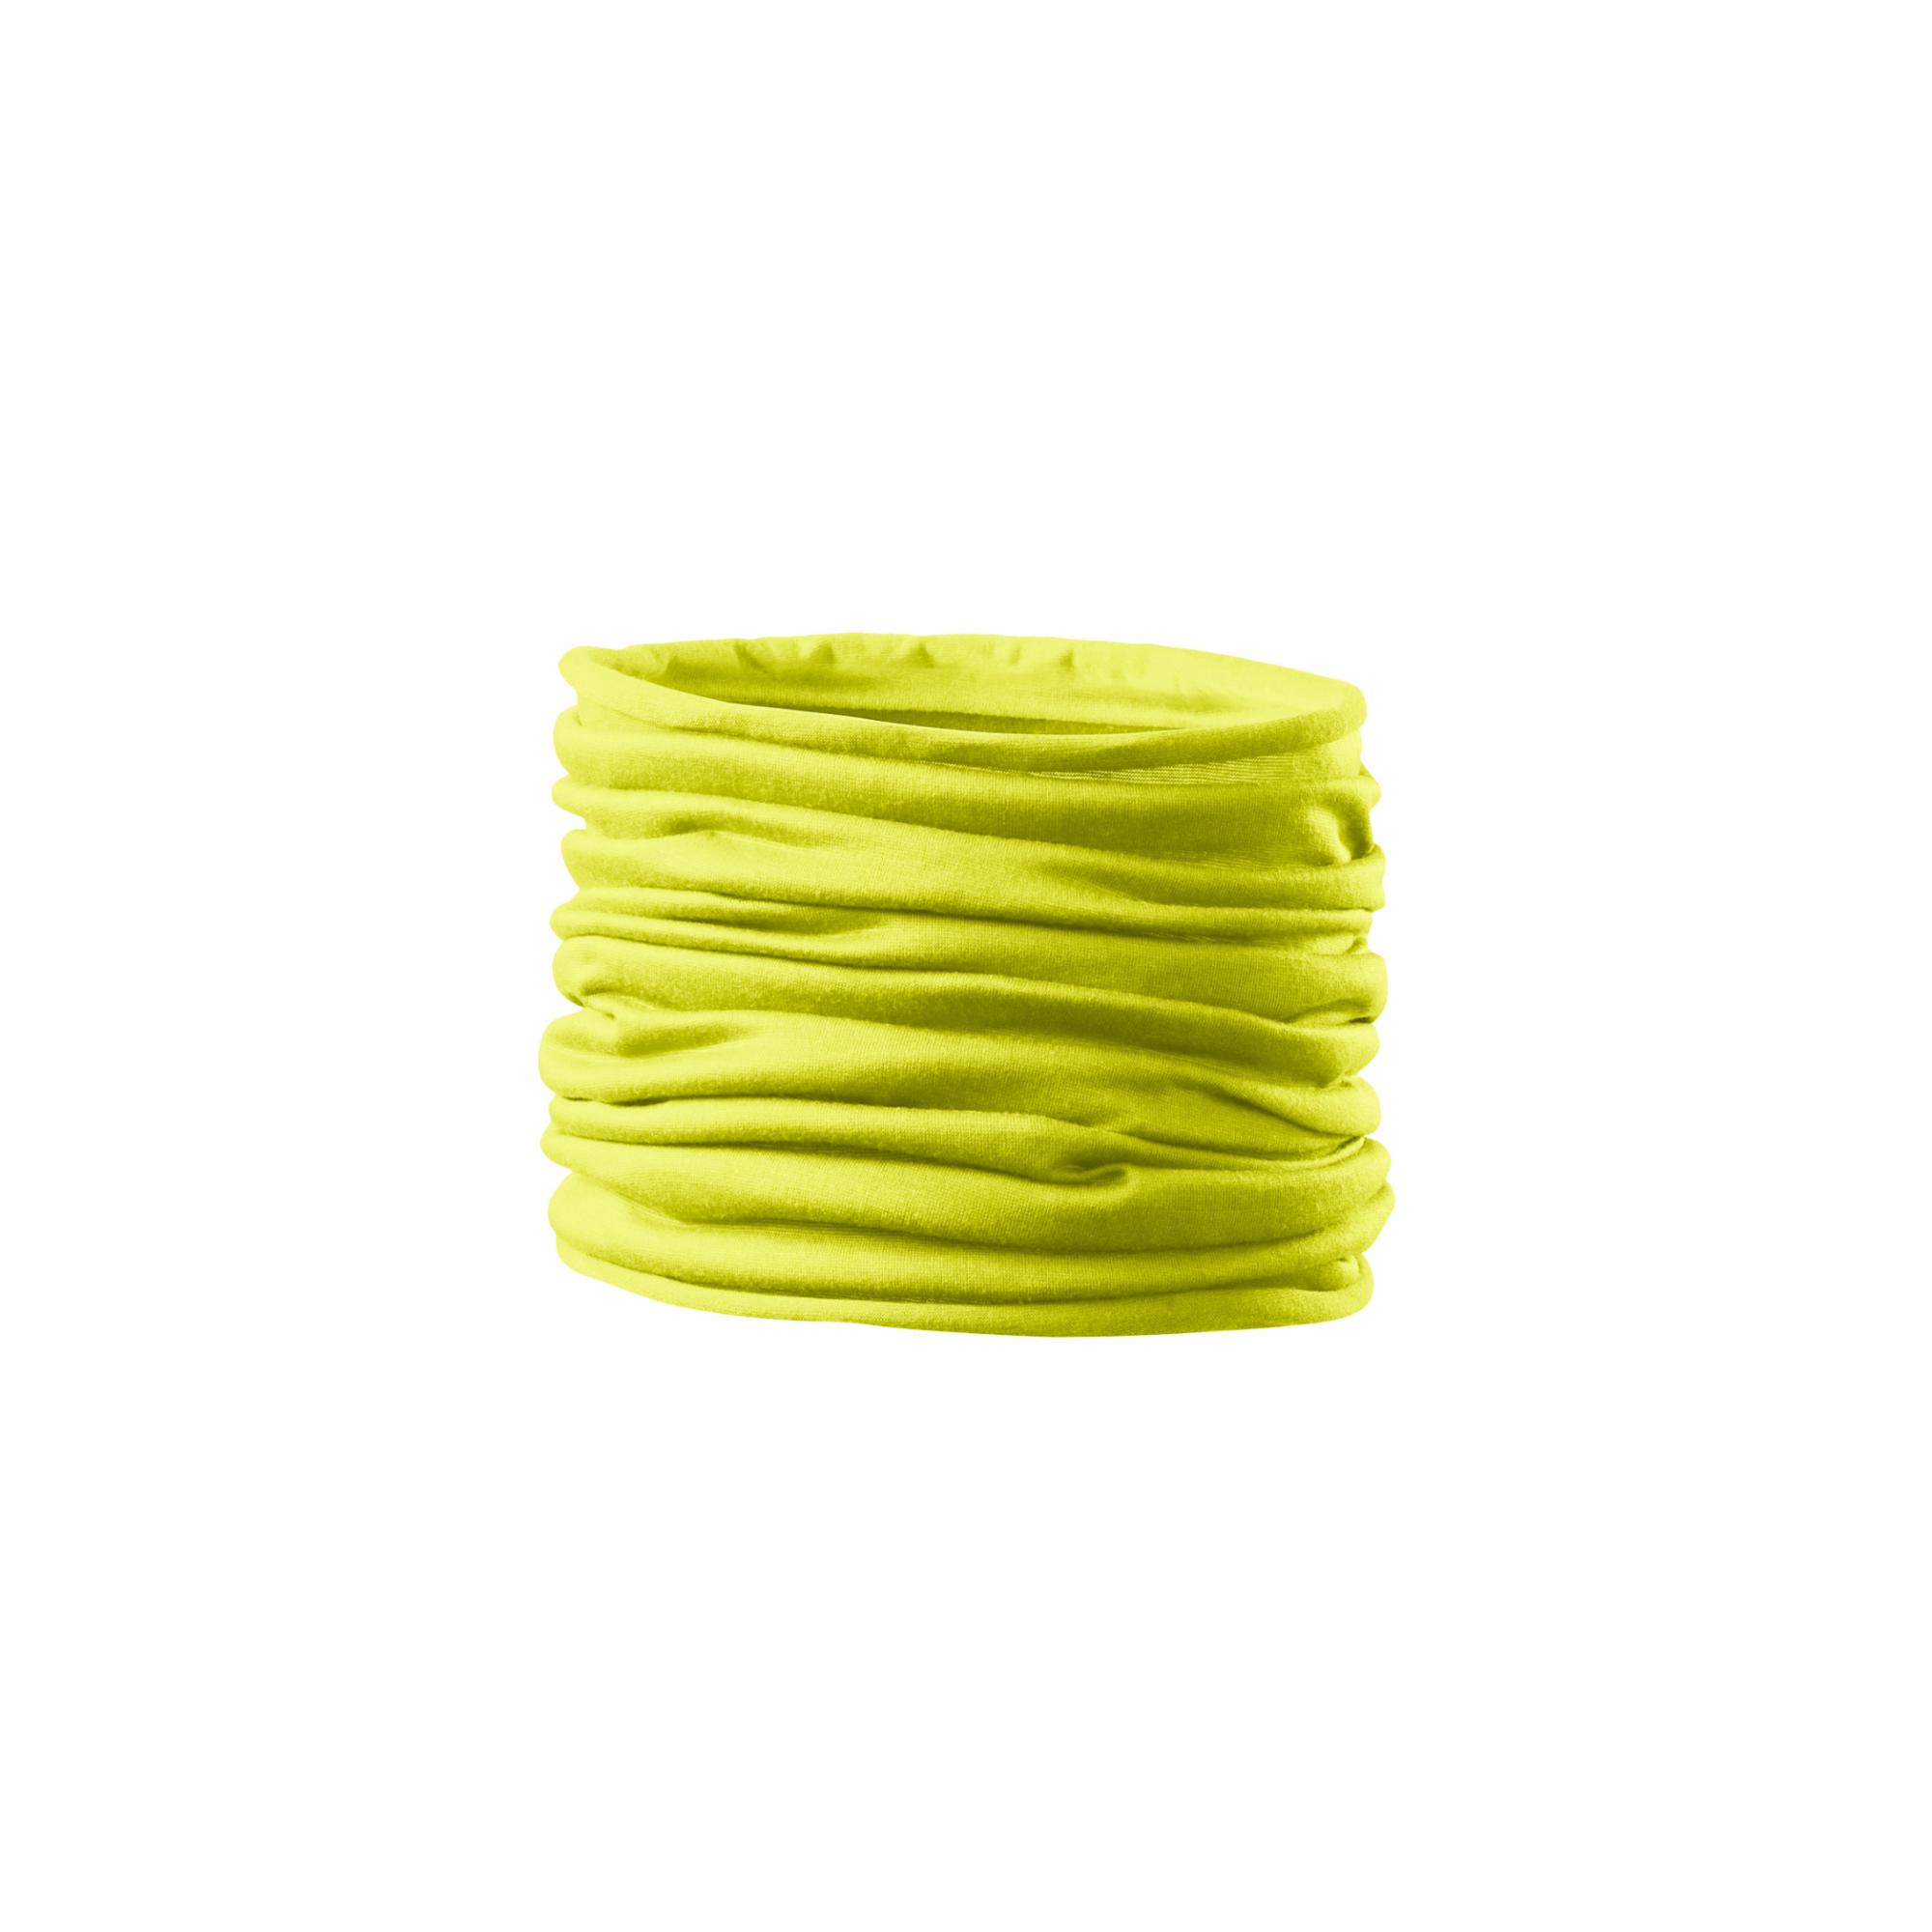 Eşarfă unisex/pentru copii Twister 328 Galben neon Marime universala